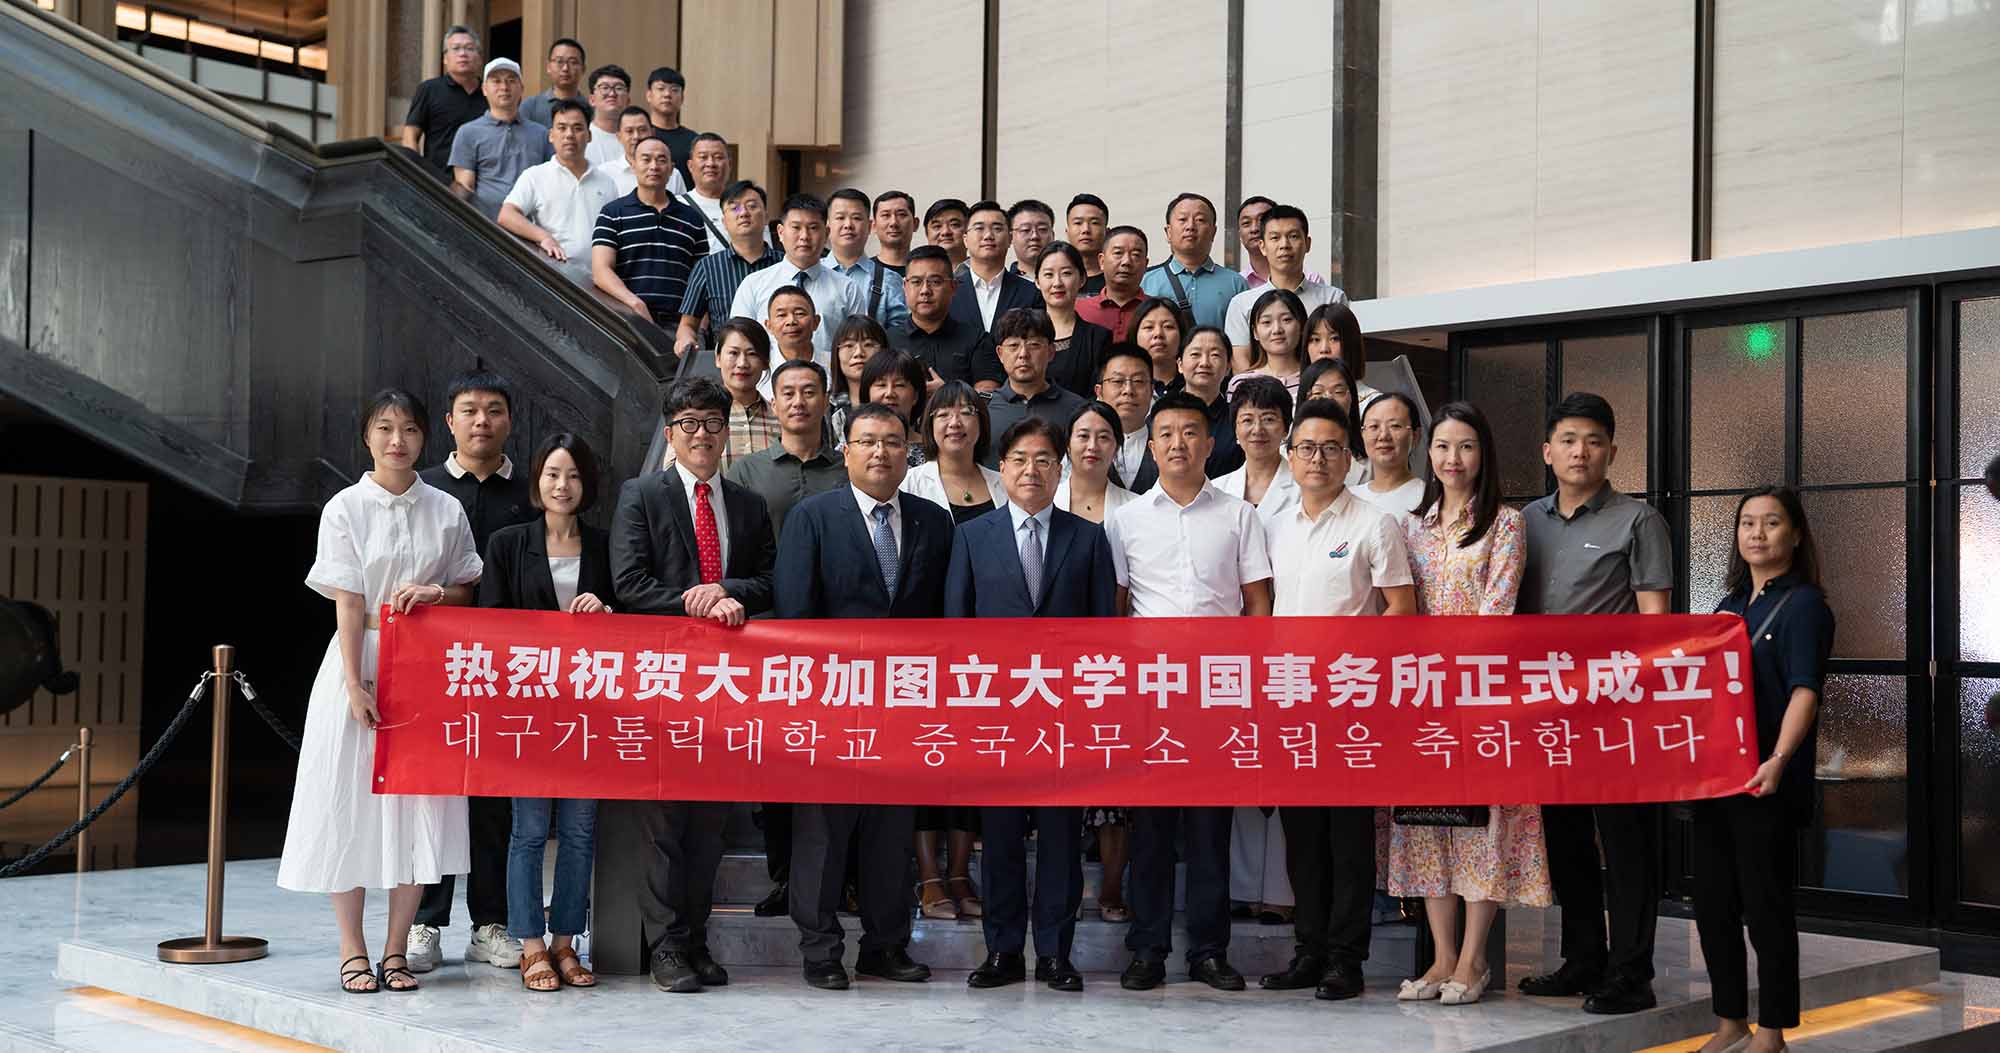 중국사무소, 대만 타이중 세종학당 설립을 통해 중화권 유학생 유치에 나서